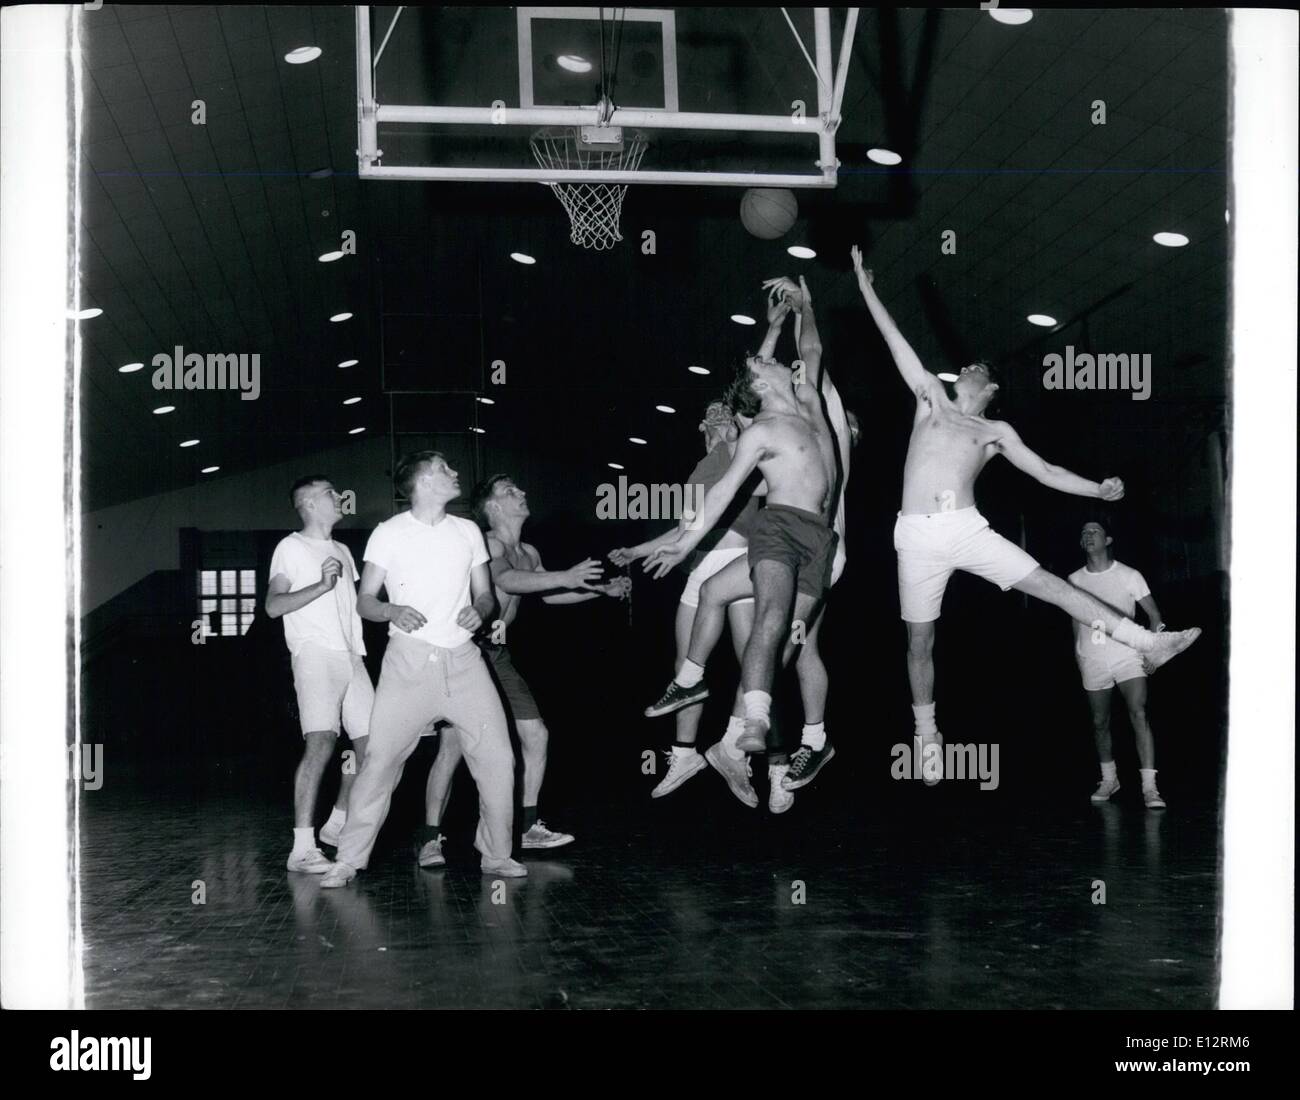 Febbraio 24, 2012 - Un informale gioco di basket durante l'educazione fisica sessione a Princeton di Dillon palestra. Foto Stock